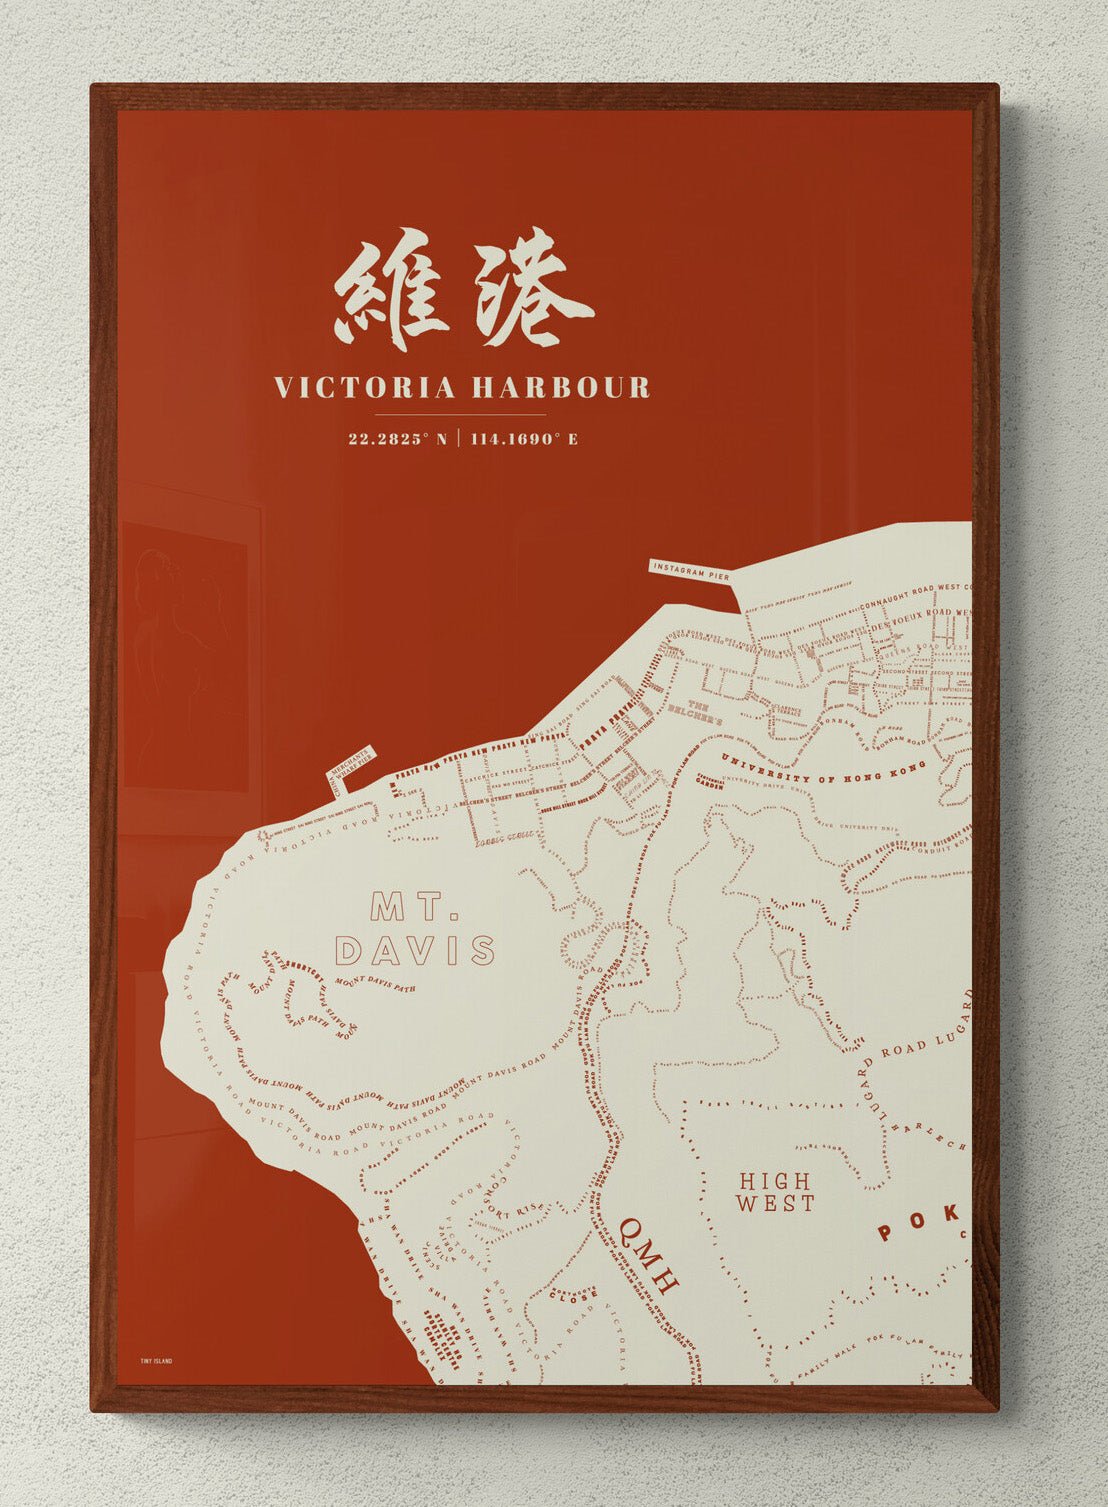 Victoria Harbour Map - tinyislandmaps